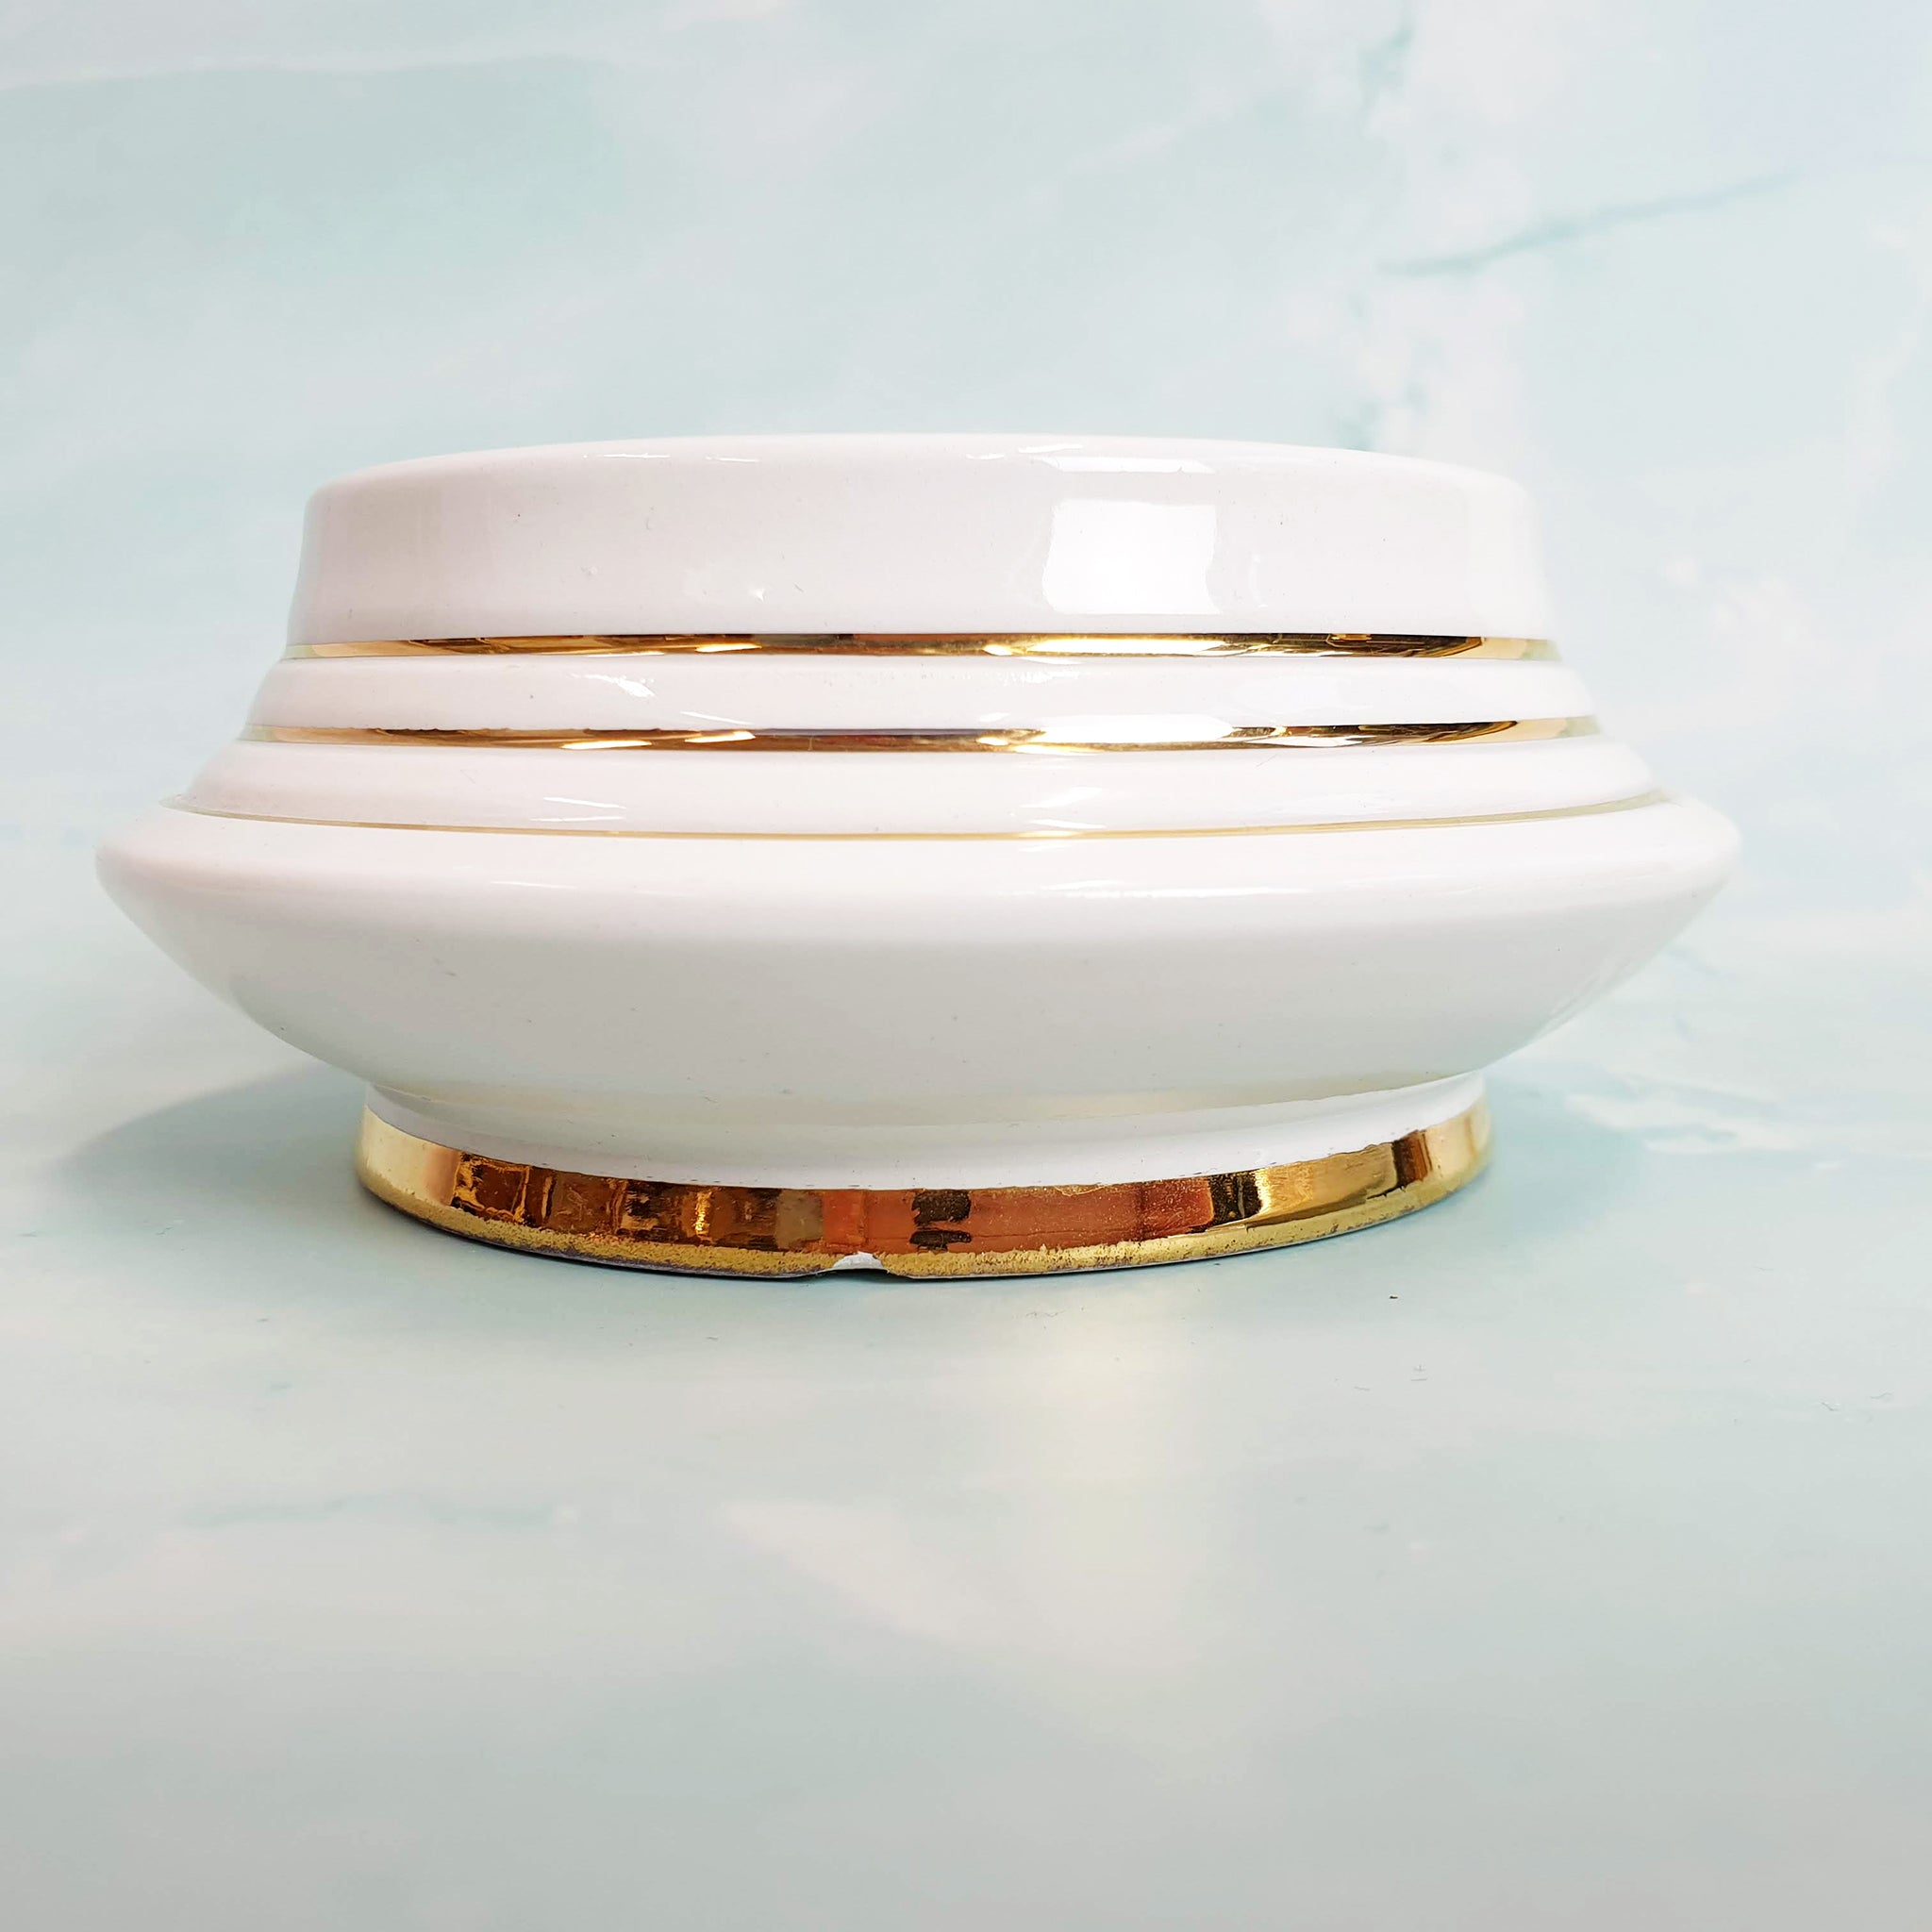 Vintage Italian ceramic box with lid by Ceramiche Artistiche Este